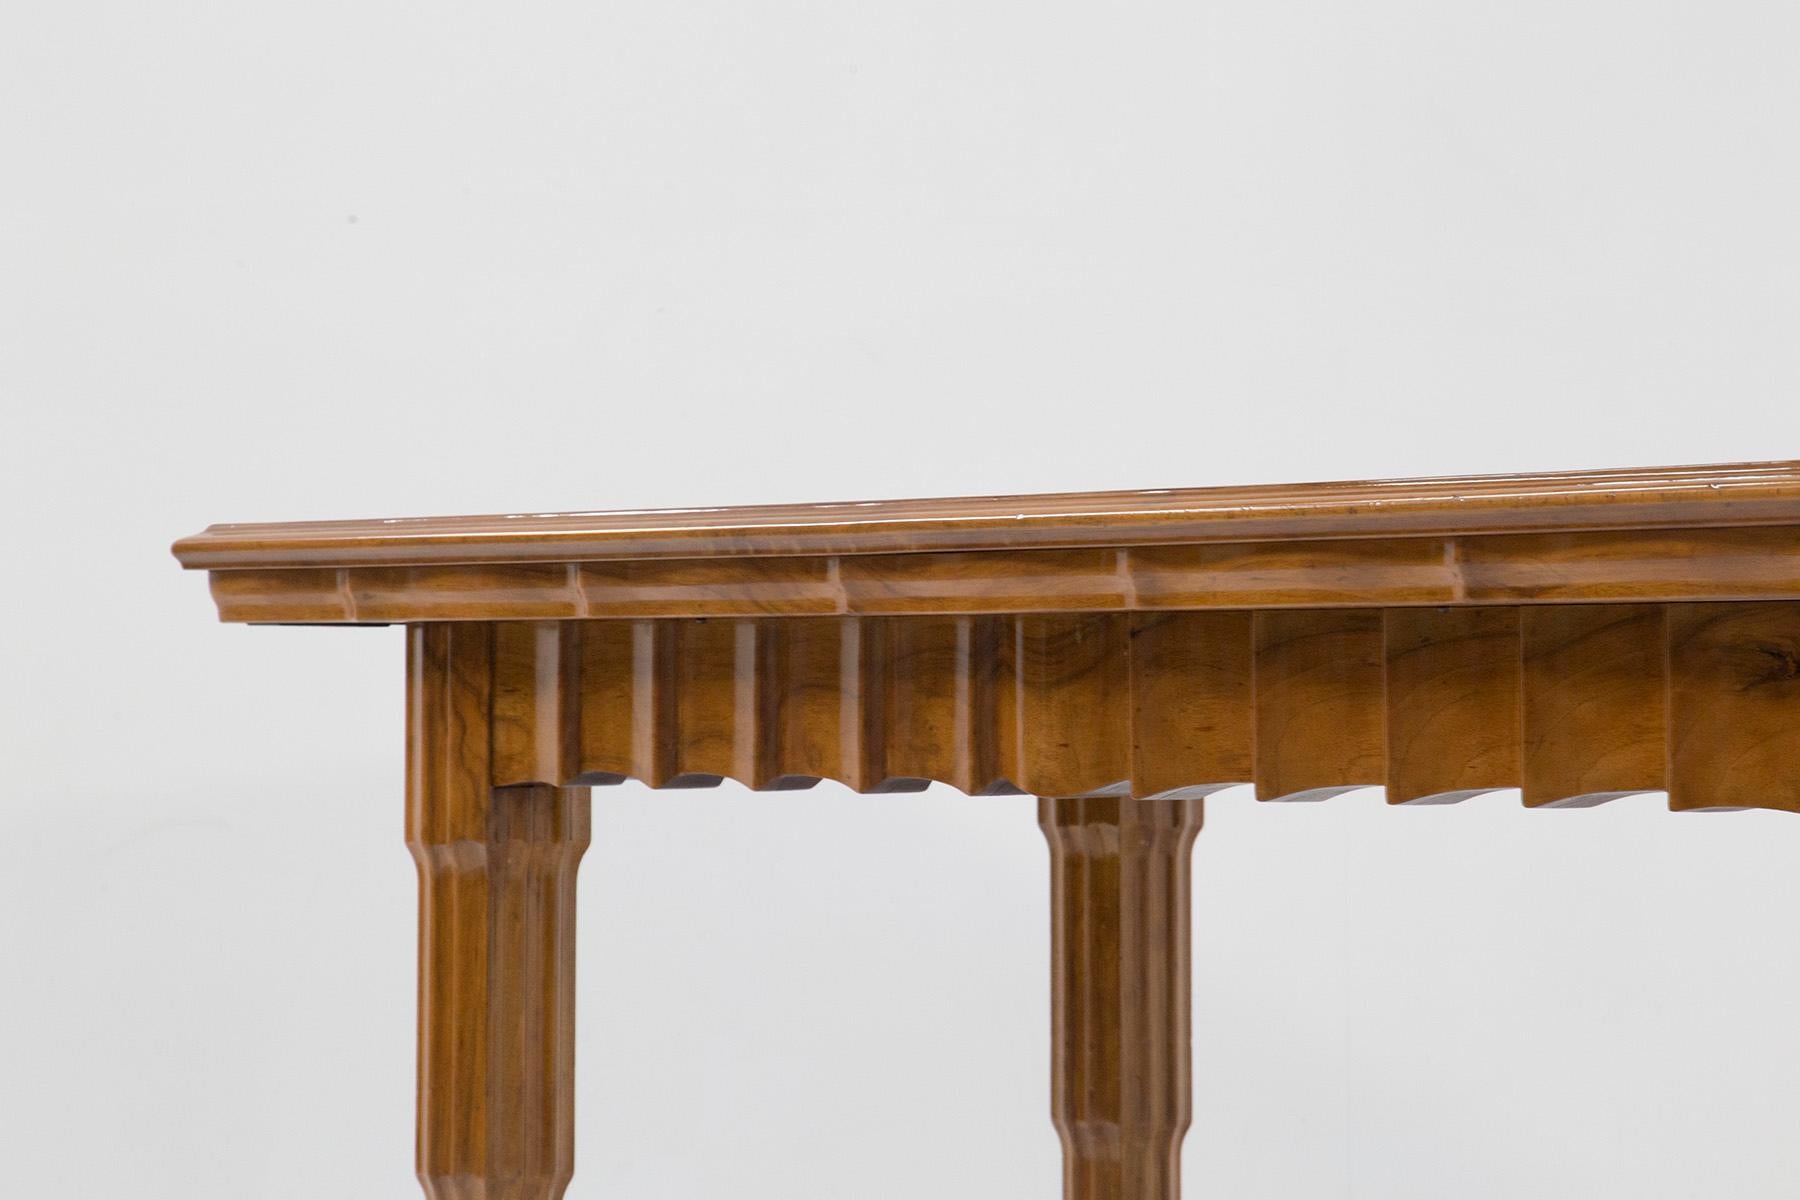 Elegante table de salle à manger de Paul Follot Attribué, de fabrication française de la période Art déco française. La table est entièrement en bois. La table est fabriquée selon une technique magnifique et témoigne d'un grand savoir-faire dans le